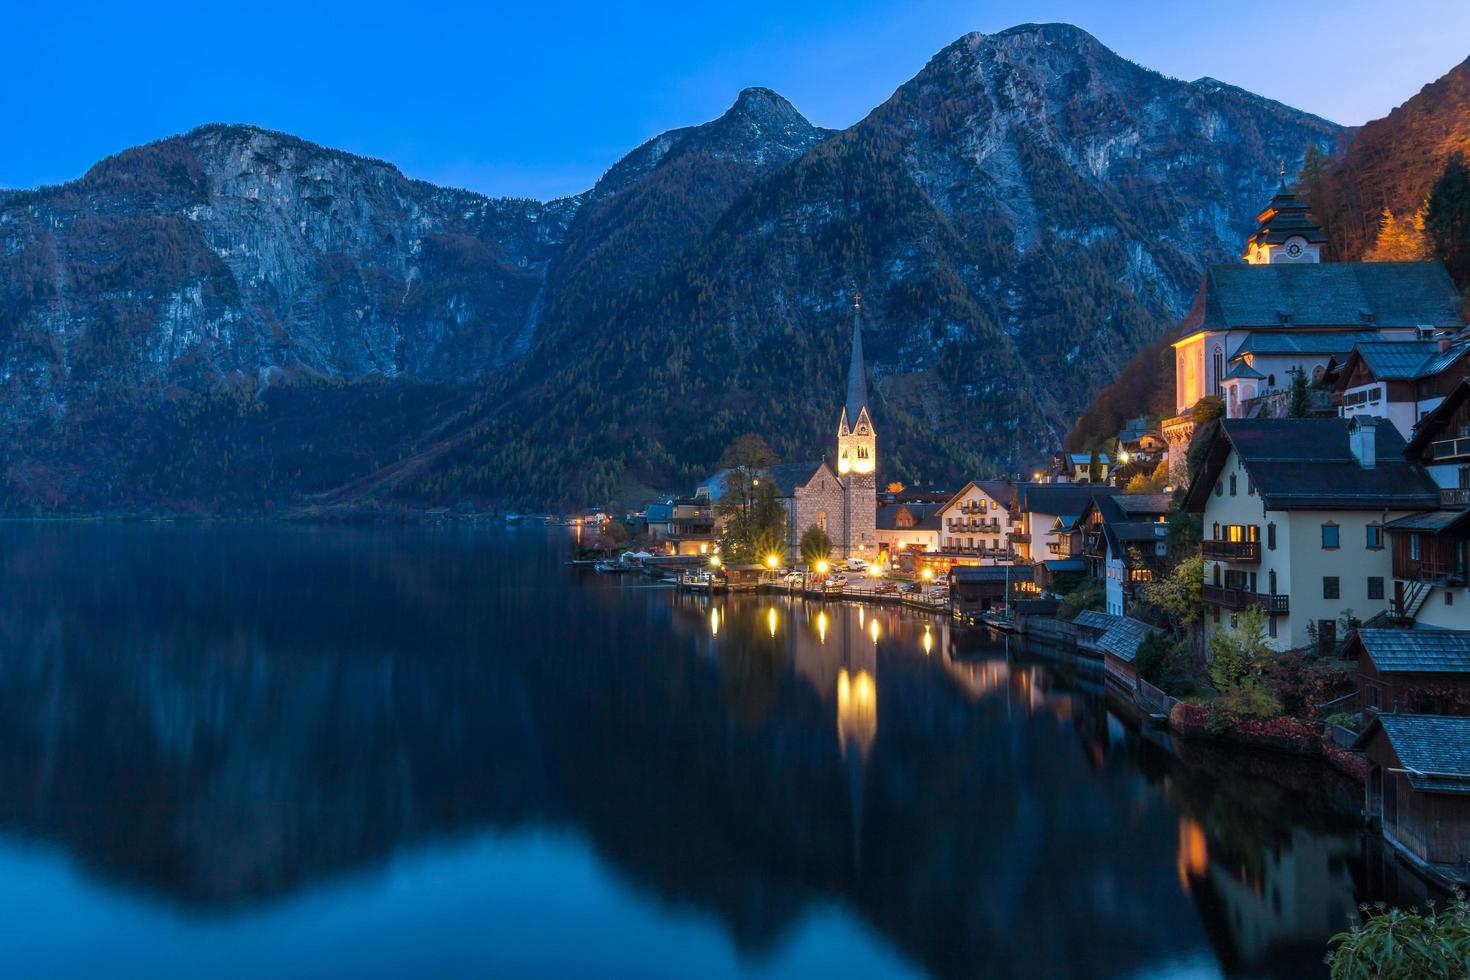 Hallstatt Mountain Village en la noche desde el clásico mirador de postal salzkammergut austria foto